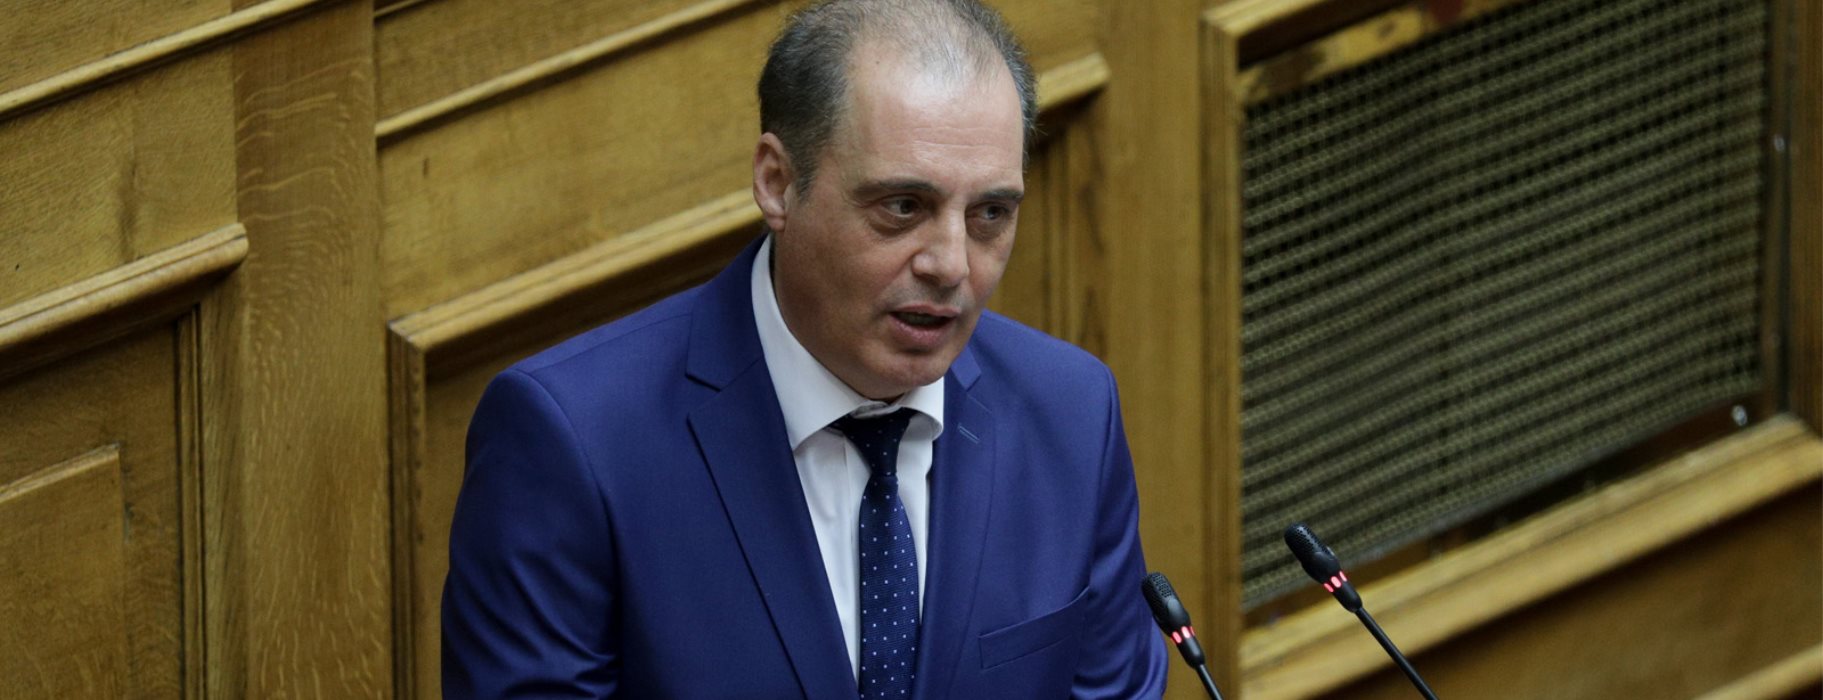 Κ.Βελόπουλος: «Ο Τούρκος εισβολέας δεν αντιμετωπίζεται με νομικά συγγράμματα – Πρέπει να απαντήσουμε στρατιωτικά»